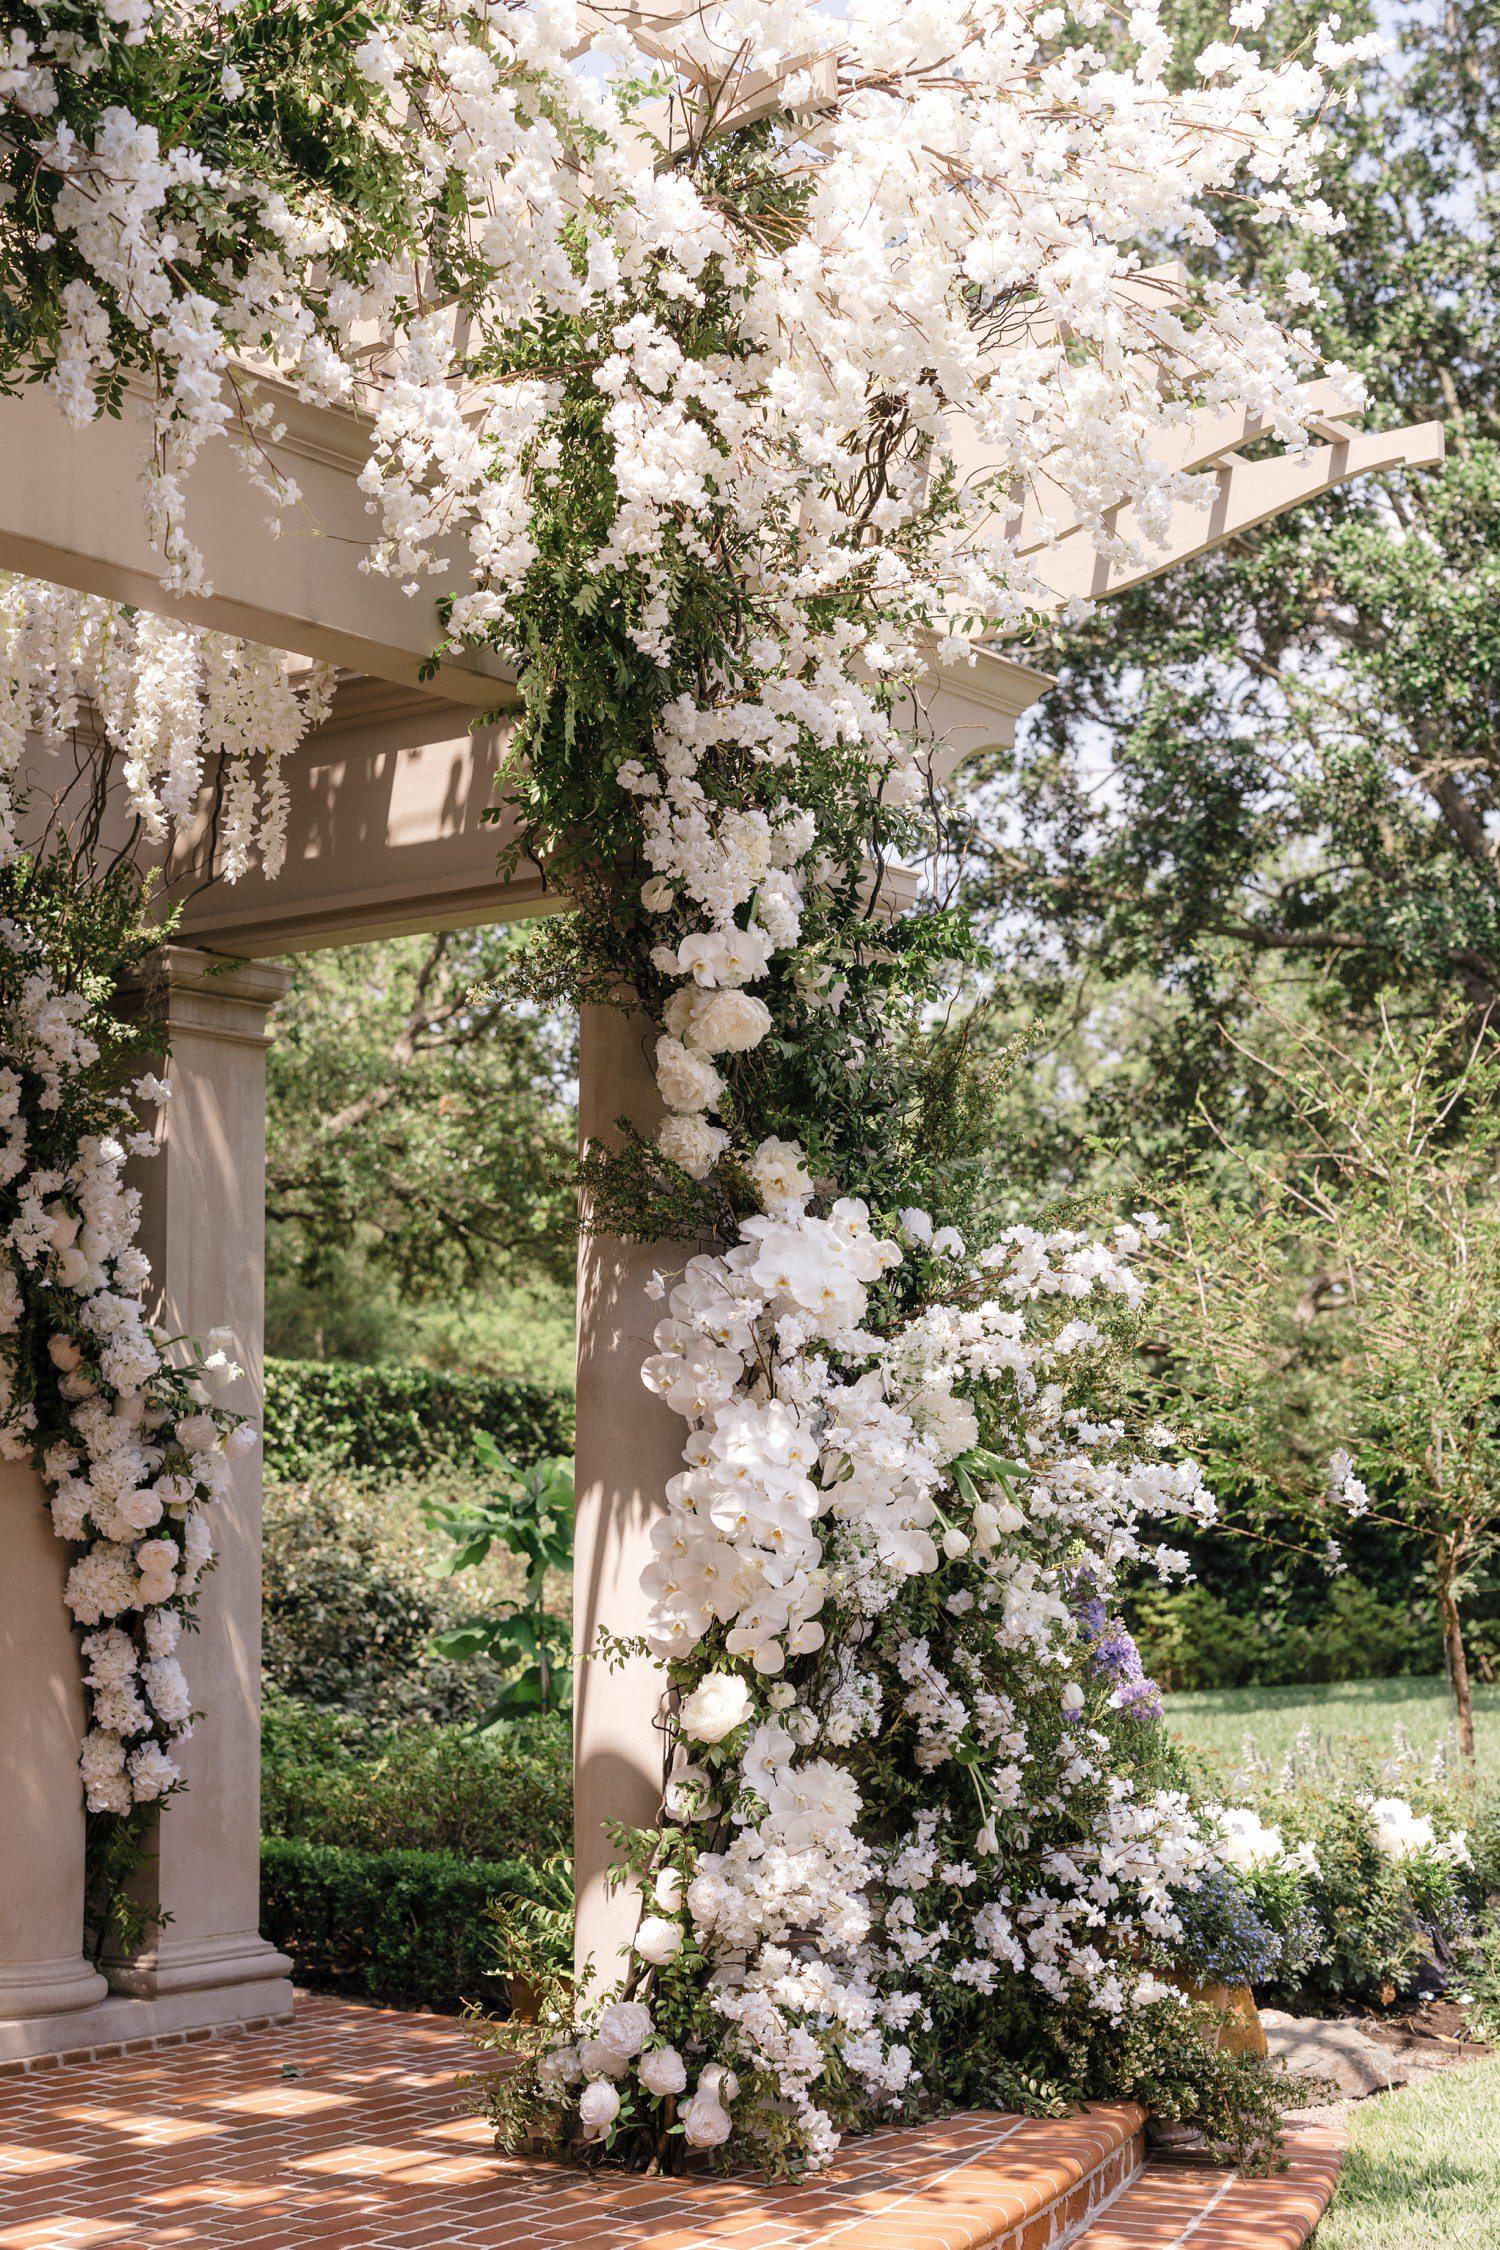 Wedding Gazebo with White Flowers